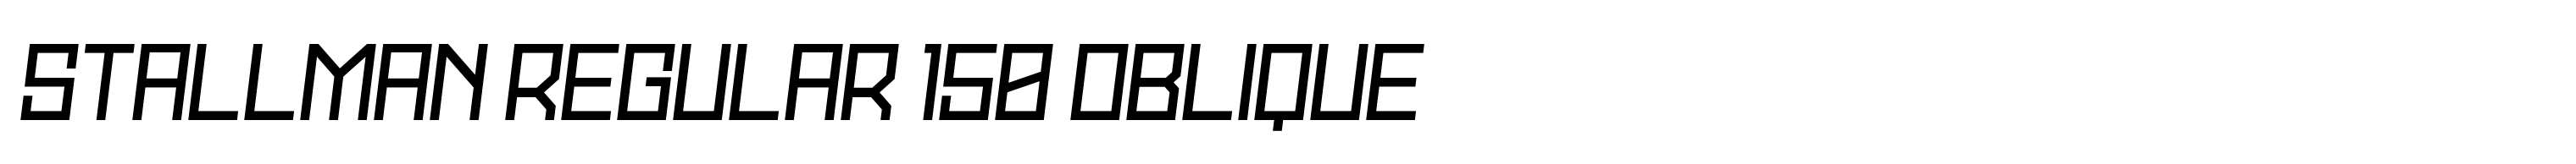 Stallman Regular 150 Oblique